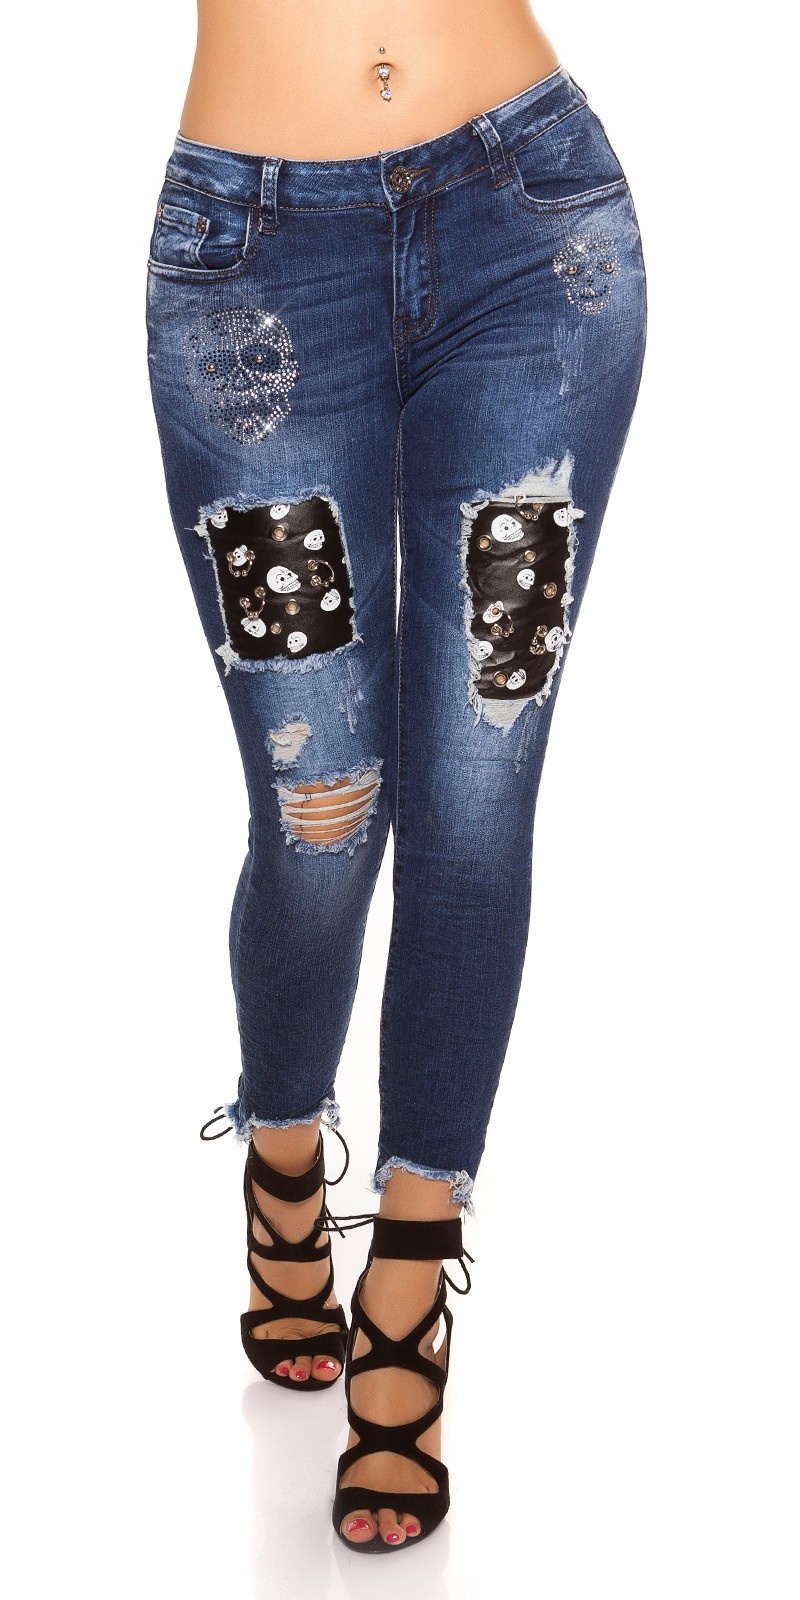 skinny jeans gebruikte used look met piercings & skelet jeansblauw